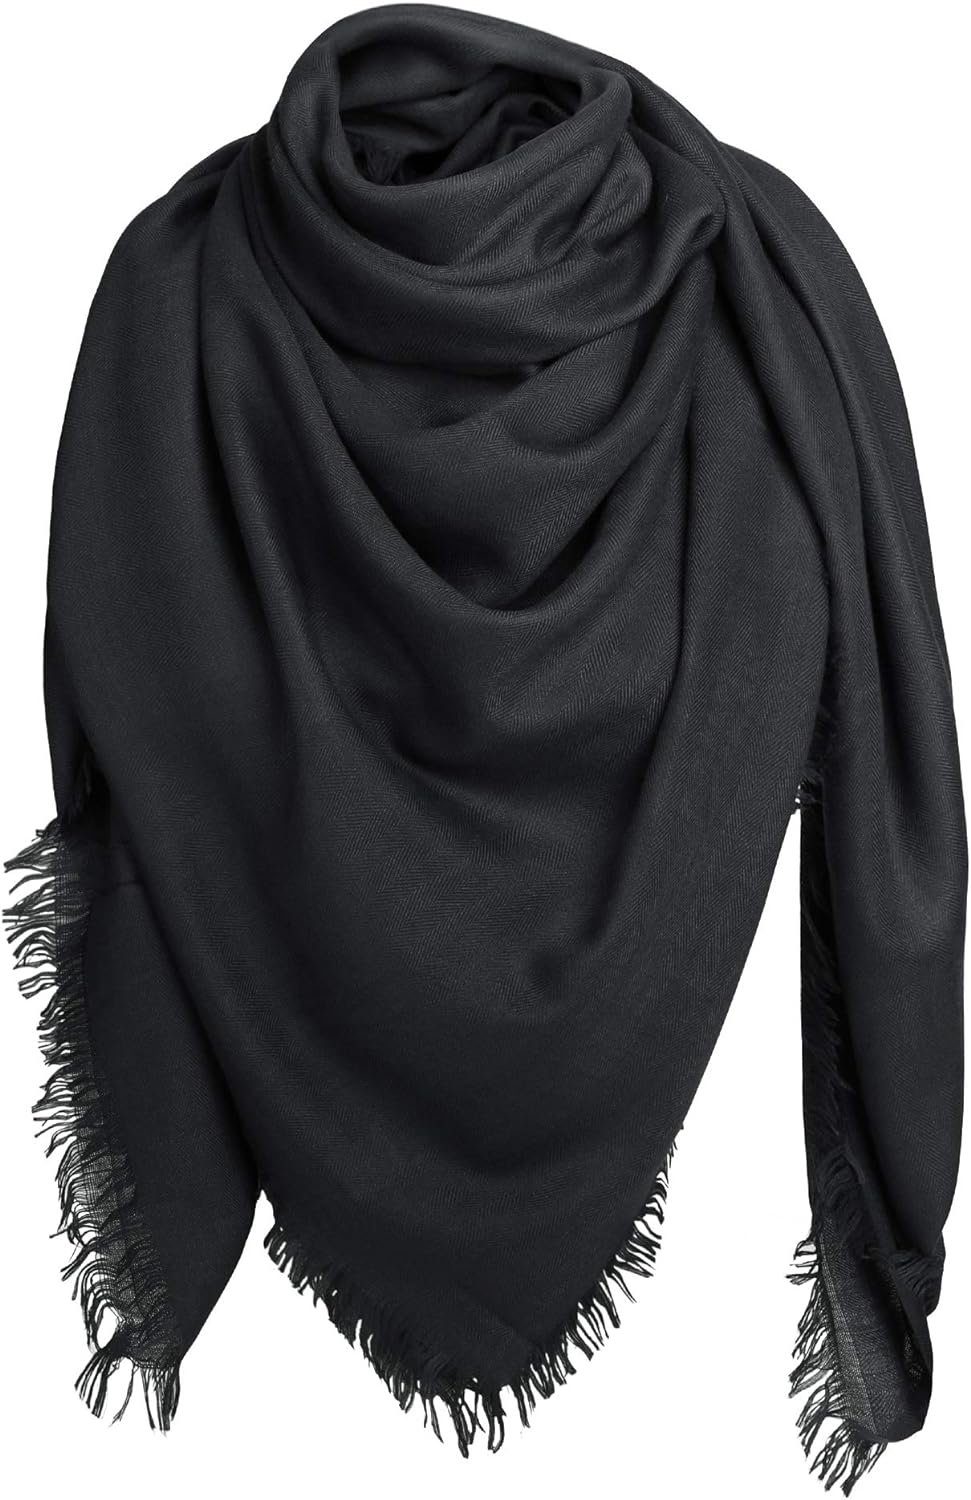 YUHRO Modeschal Damen Schal Stola Tuch mit Fransen 140 × 140 cm, Mit modischen Fransen, glatt und weich, warm und winddicht schwarz